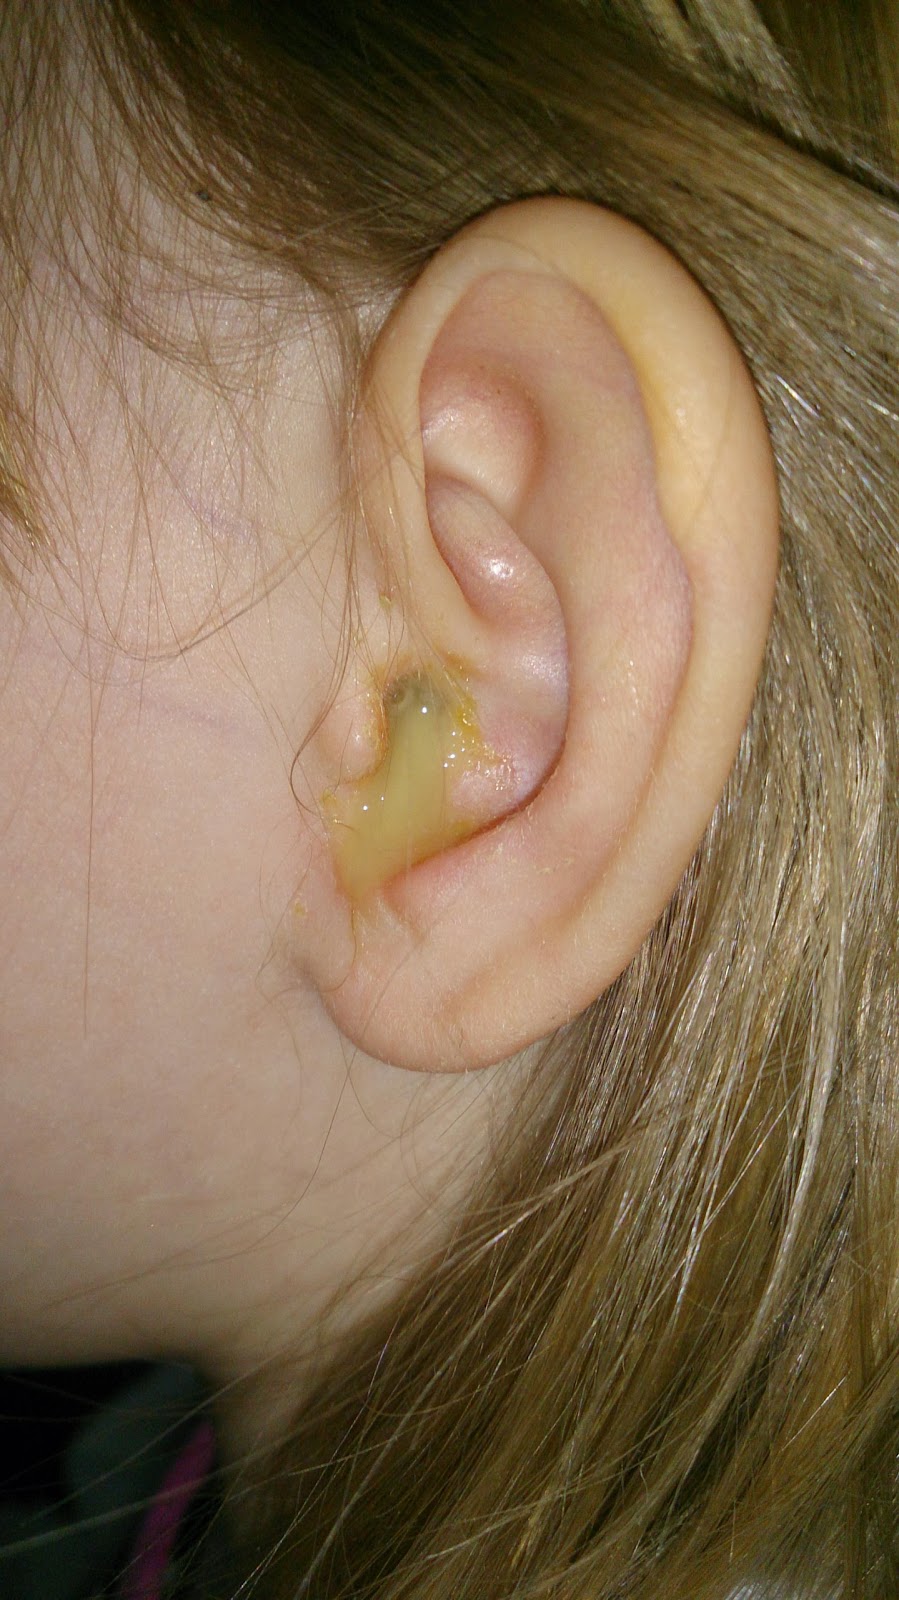 öroninflammation blod i örat